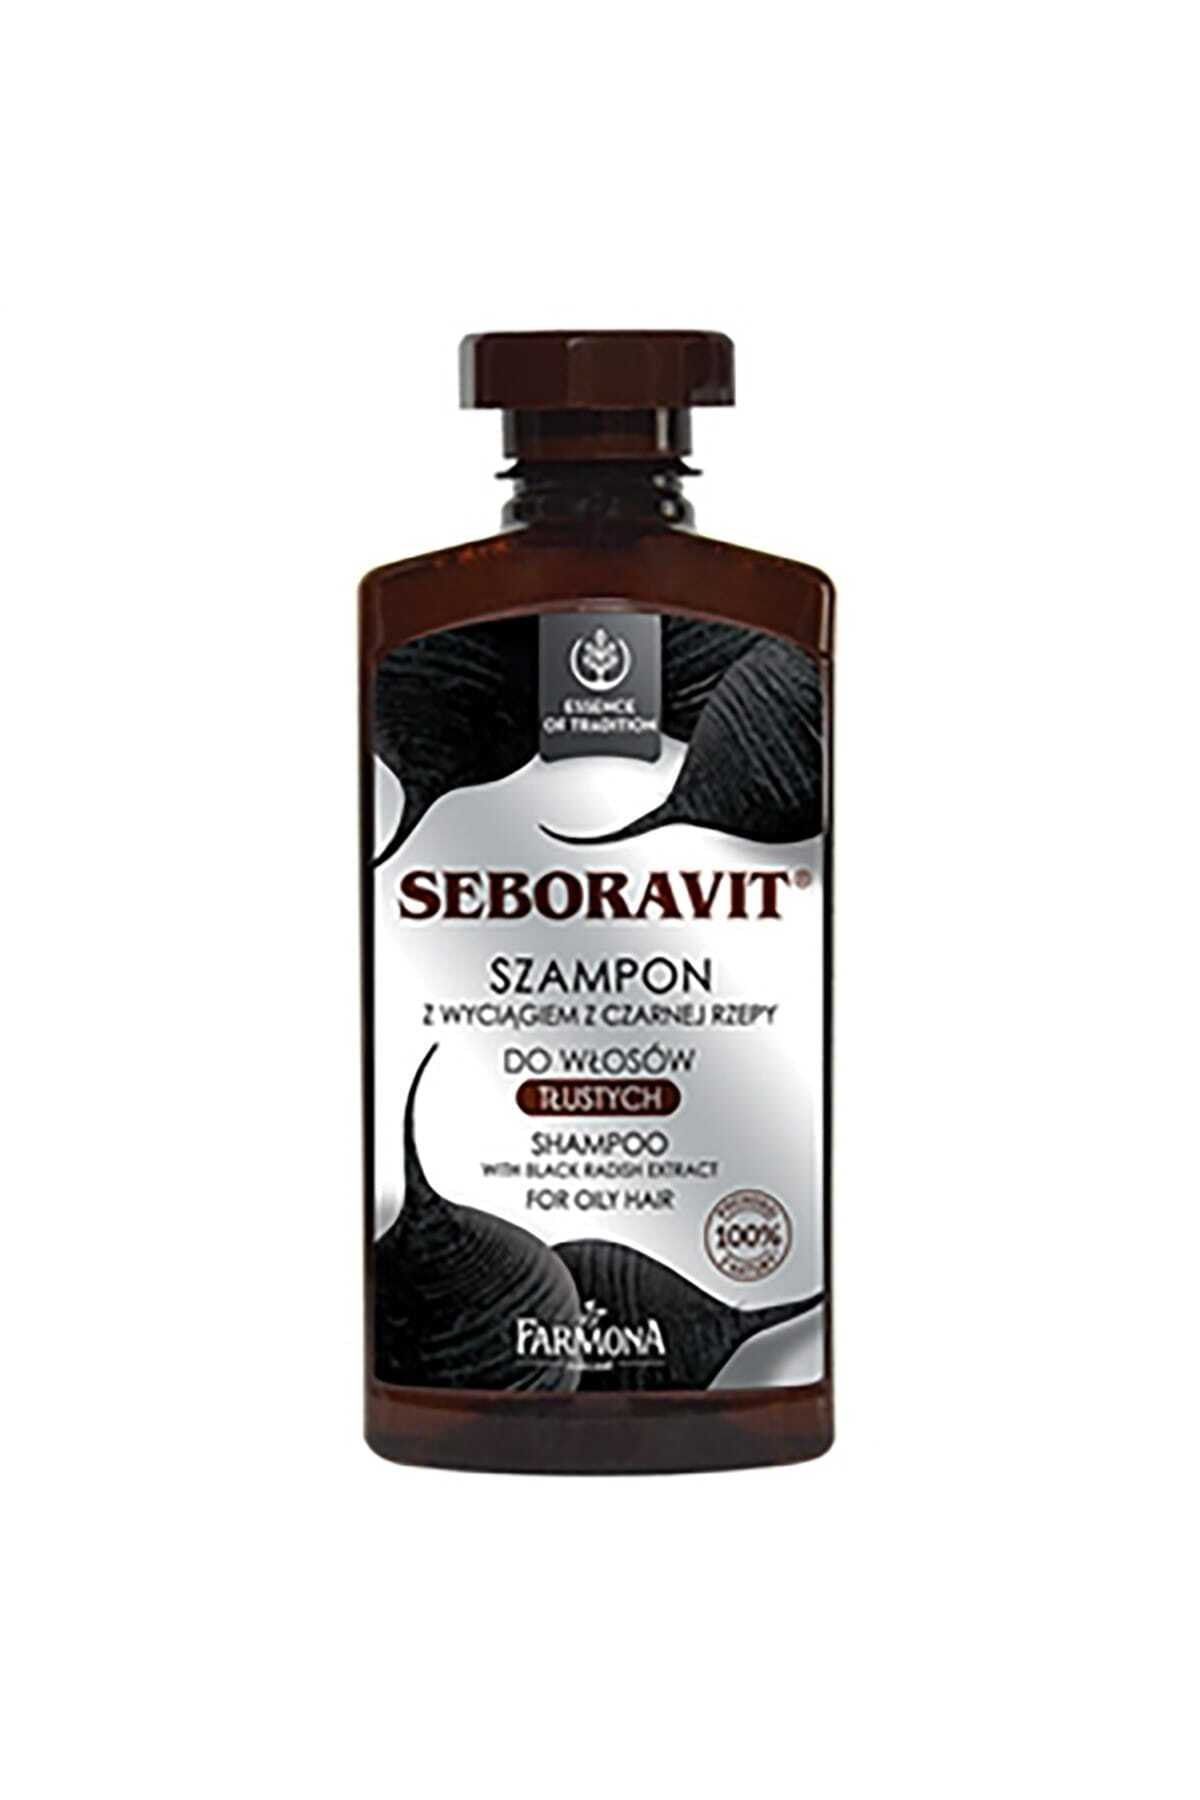 Farmona Seboravit Yağlı Saçlar için Şampuan 330 ml 5900117007945